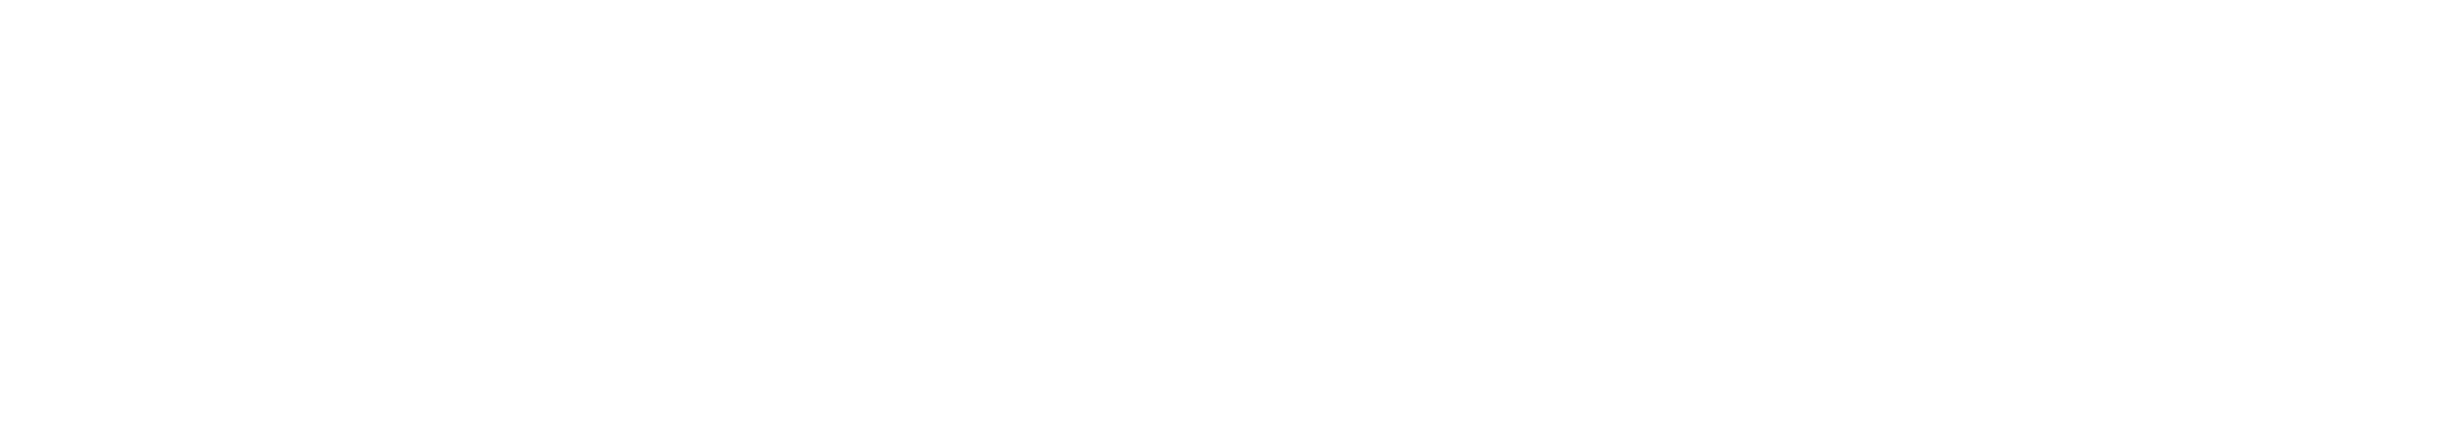 Coach empresarial barcelona - Luís Carlos Garcia